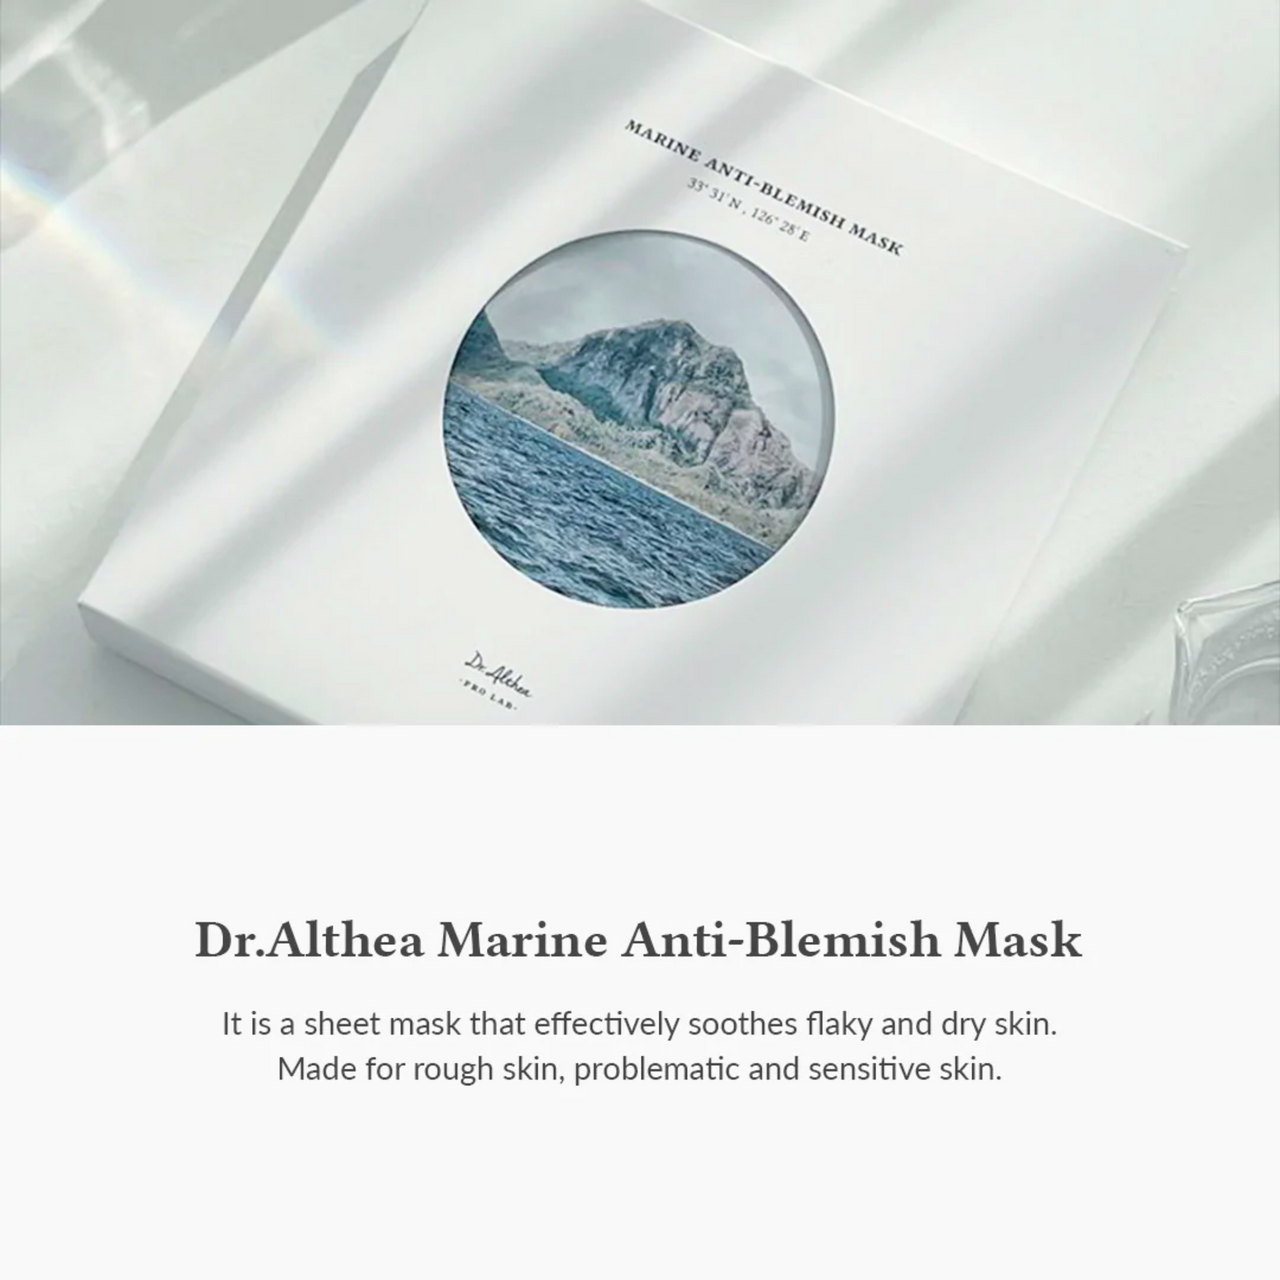 Marine Anti-Blemish Mask